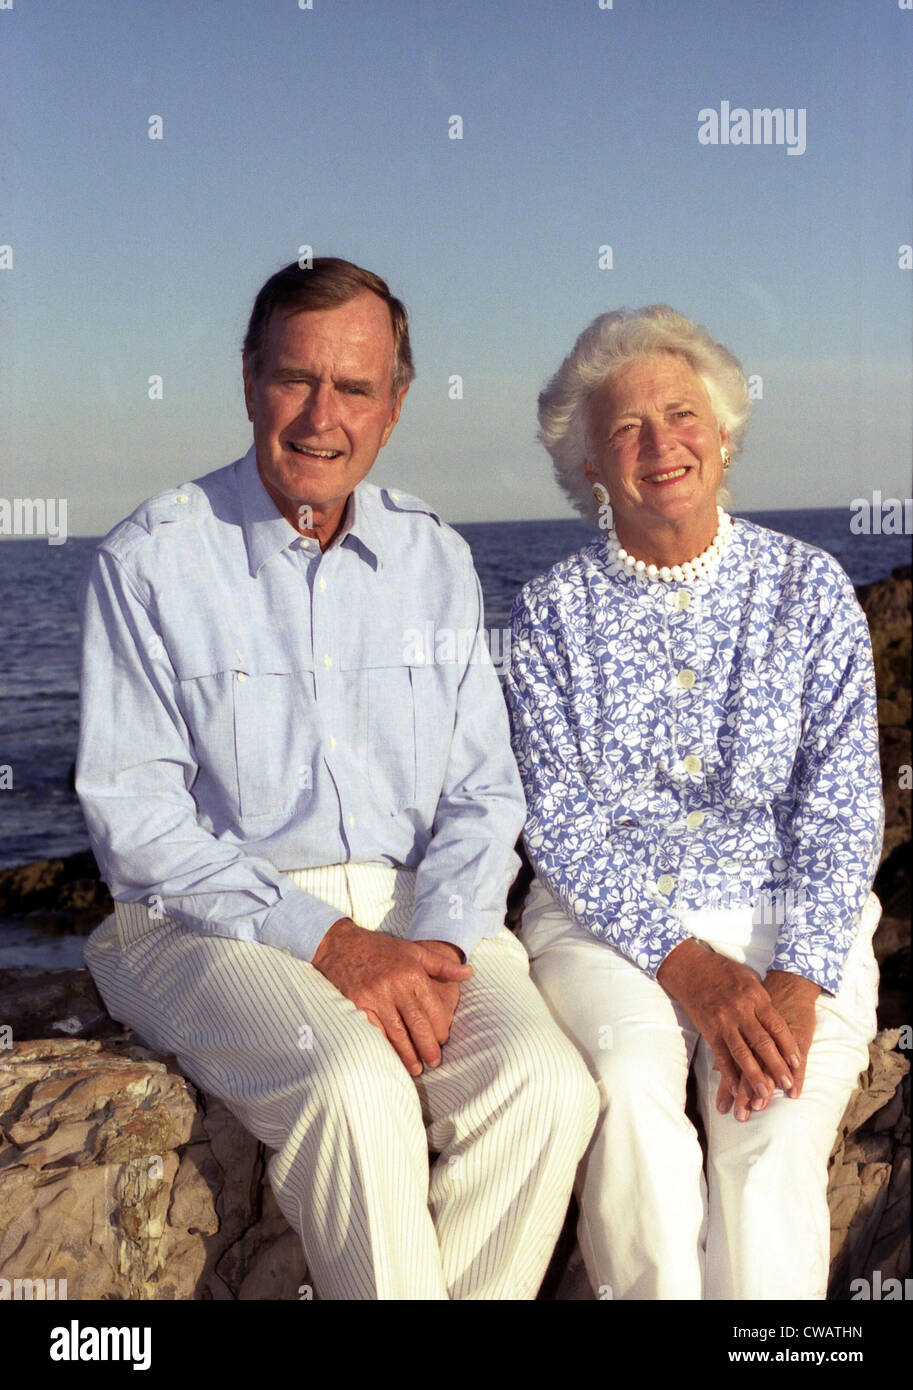 Le Président George Bush et son épouse Barbara à Walker's Point, Kennebunkport, Maine. Le 31 août 1990. 31 août 90 Banque D'Images